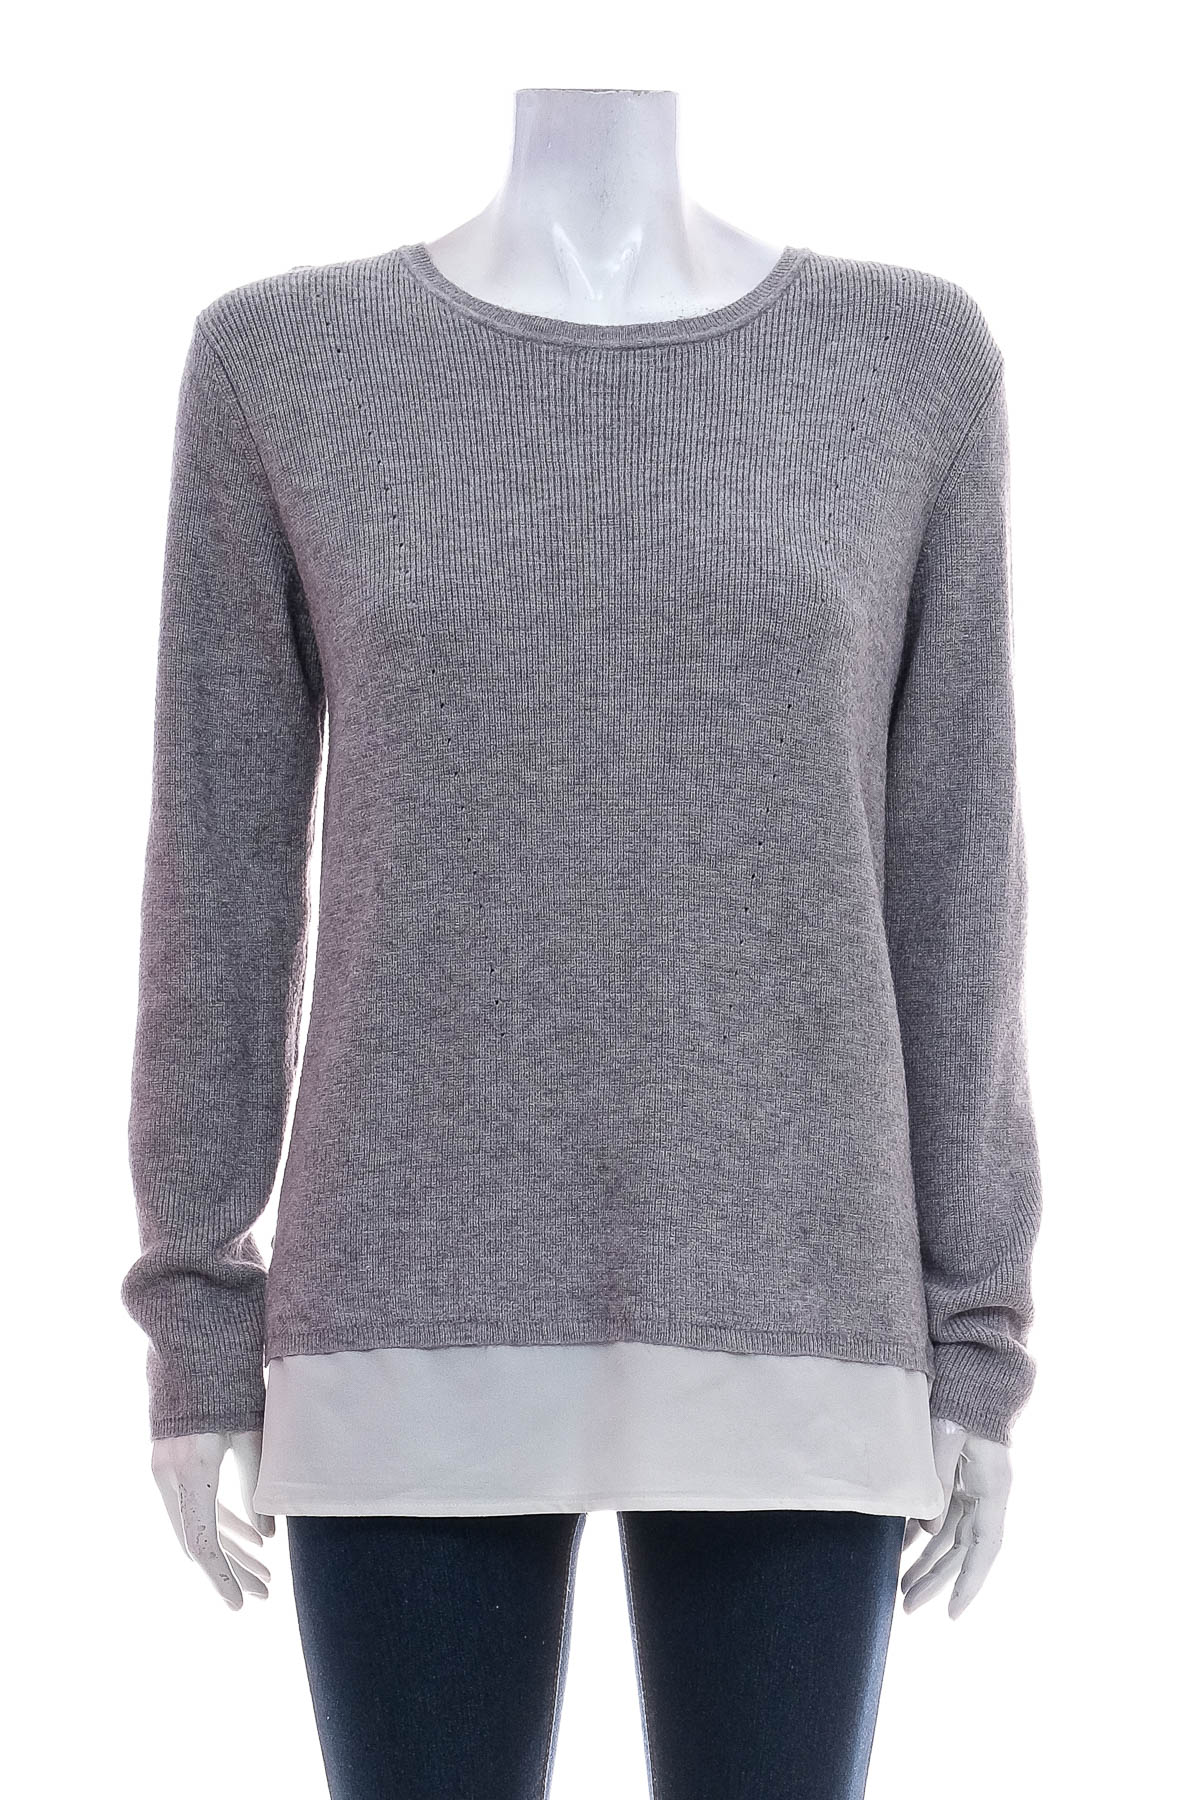 Women's sweater - Peckott - 0